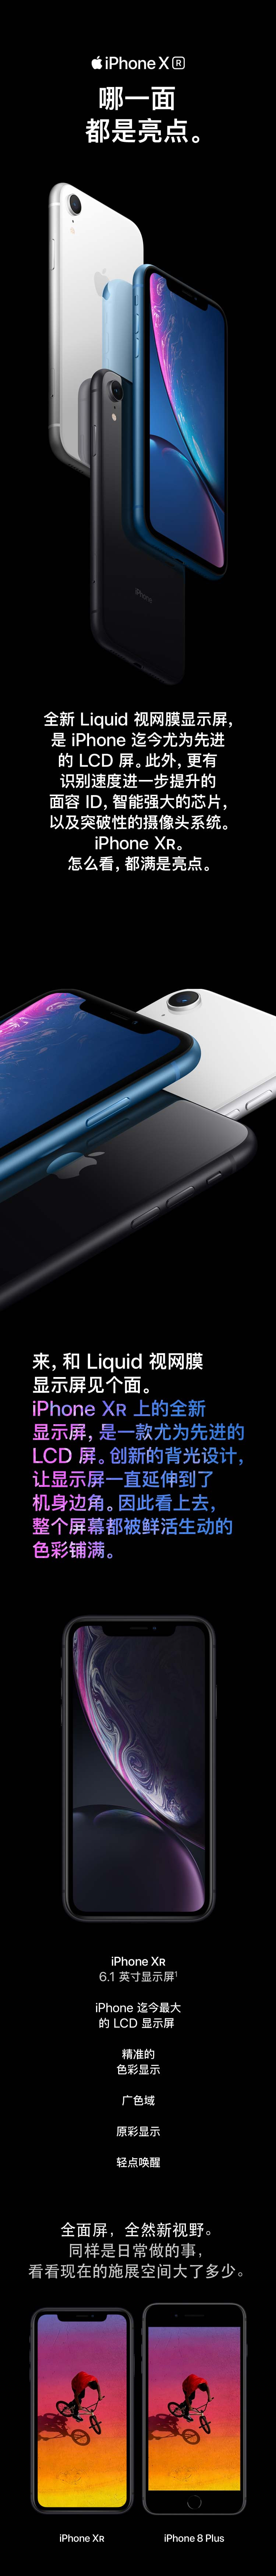 苹果 iPhone XR (A2108) 64GB 黑色 全网通4G手机 MT122CH/A